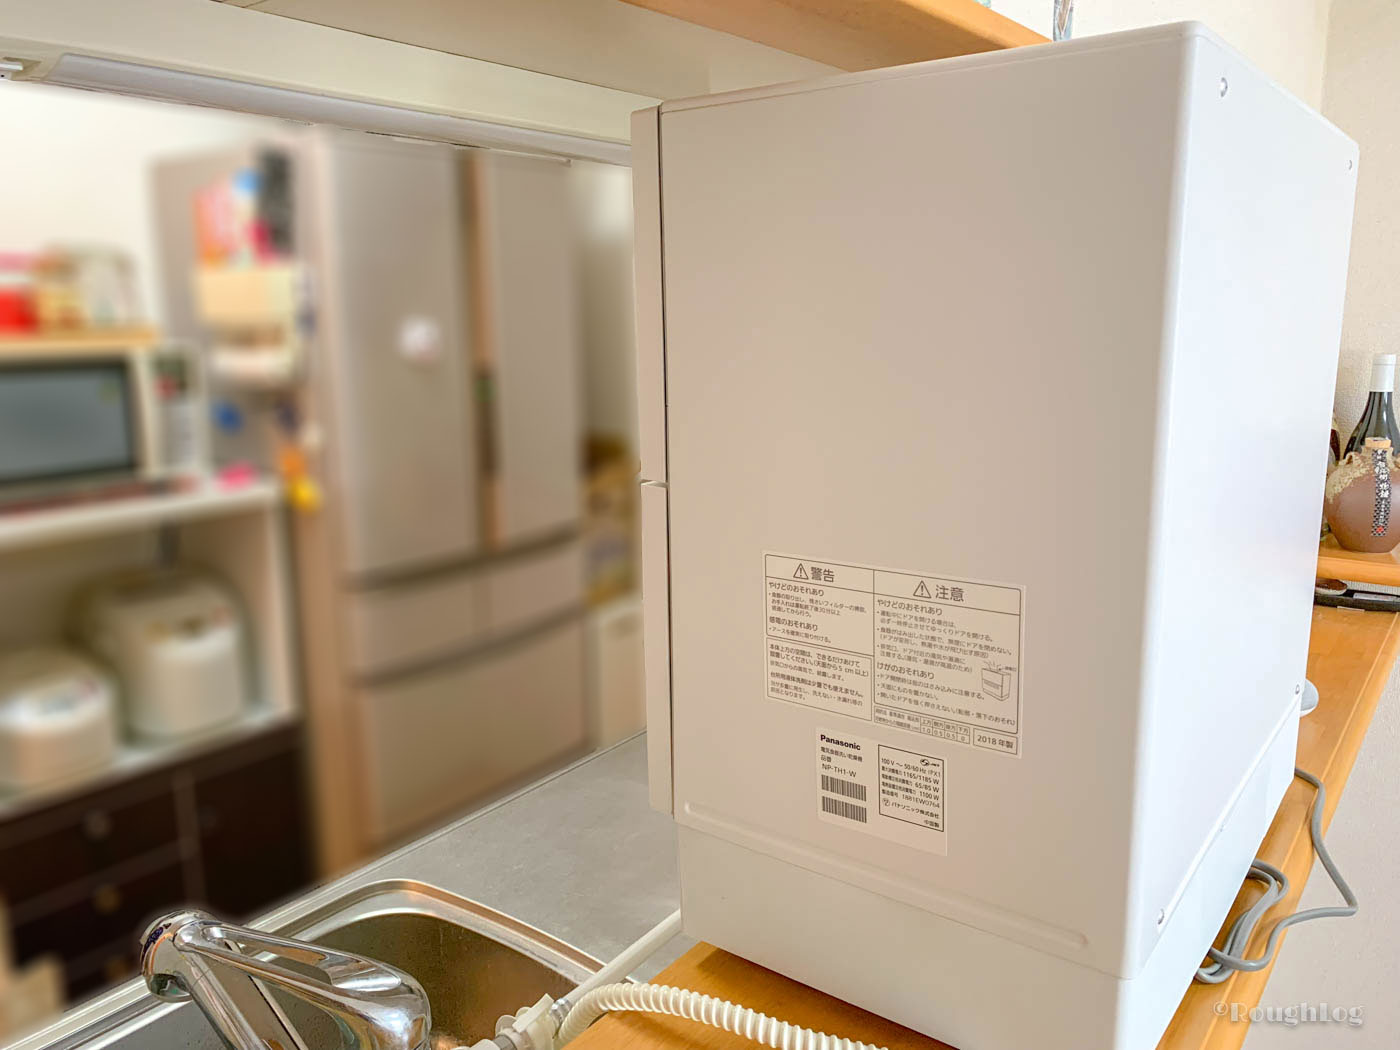 パナソニック製食器洗い乾燥機を賃貸住宅のカウンターキッチンに設置